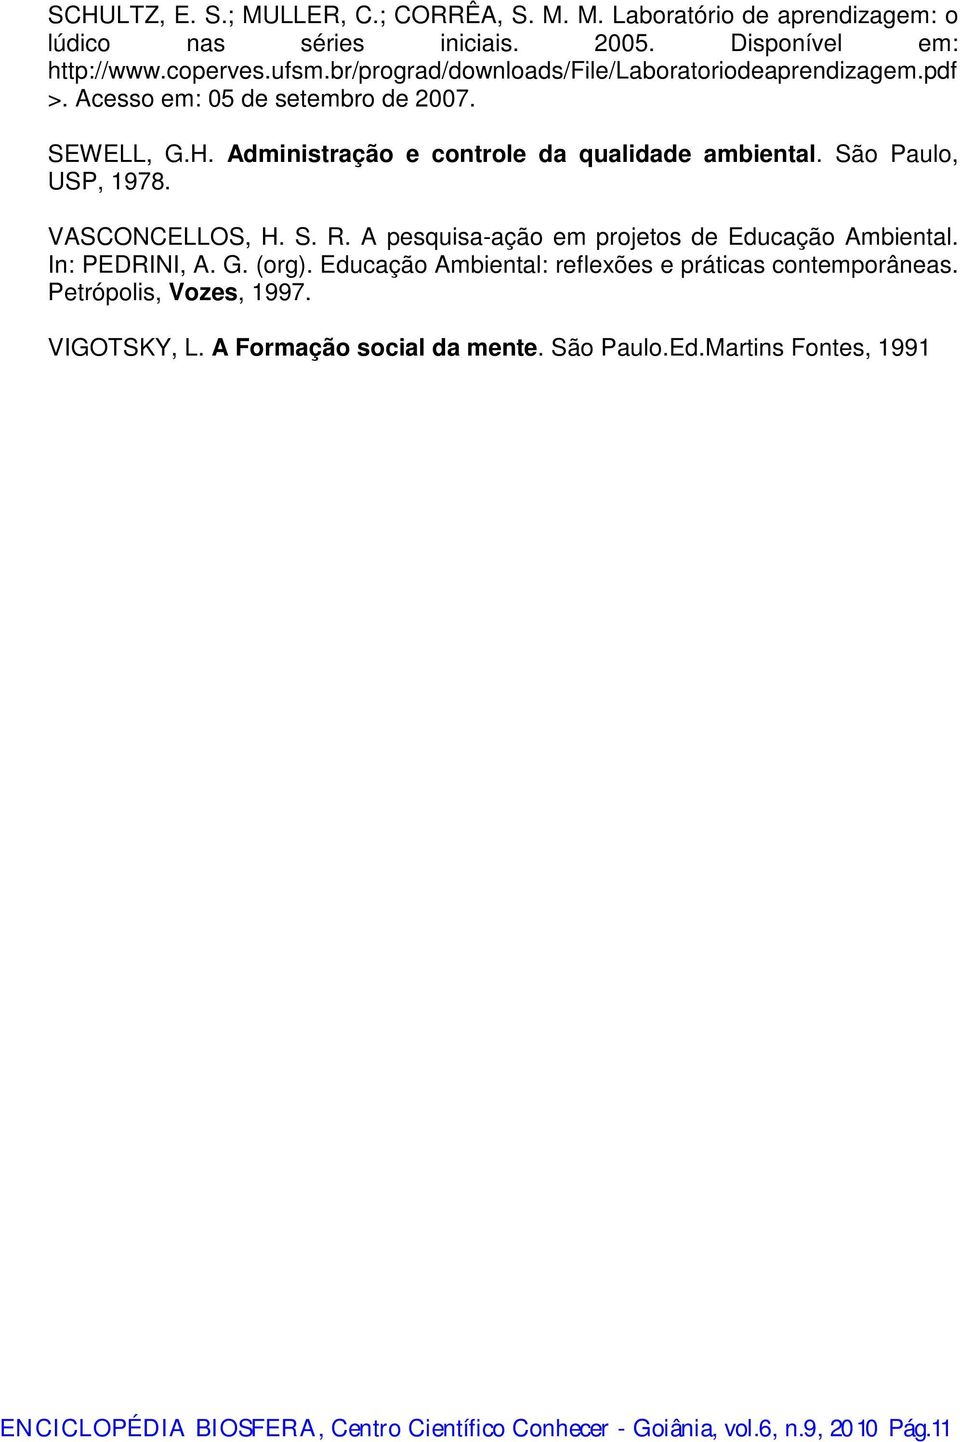 São Paulo, USP, 1978. VASCONCELLOS, H. S. R. A pesquisa-ação em projetos de Educação Ambiental. In: PEDRINI, A. G. (org).